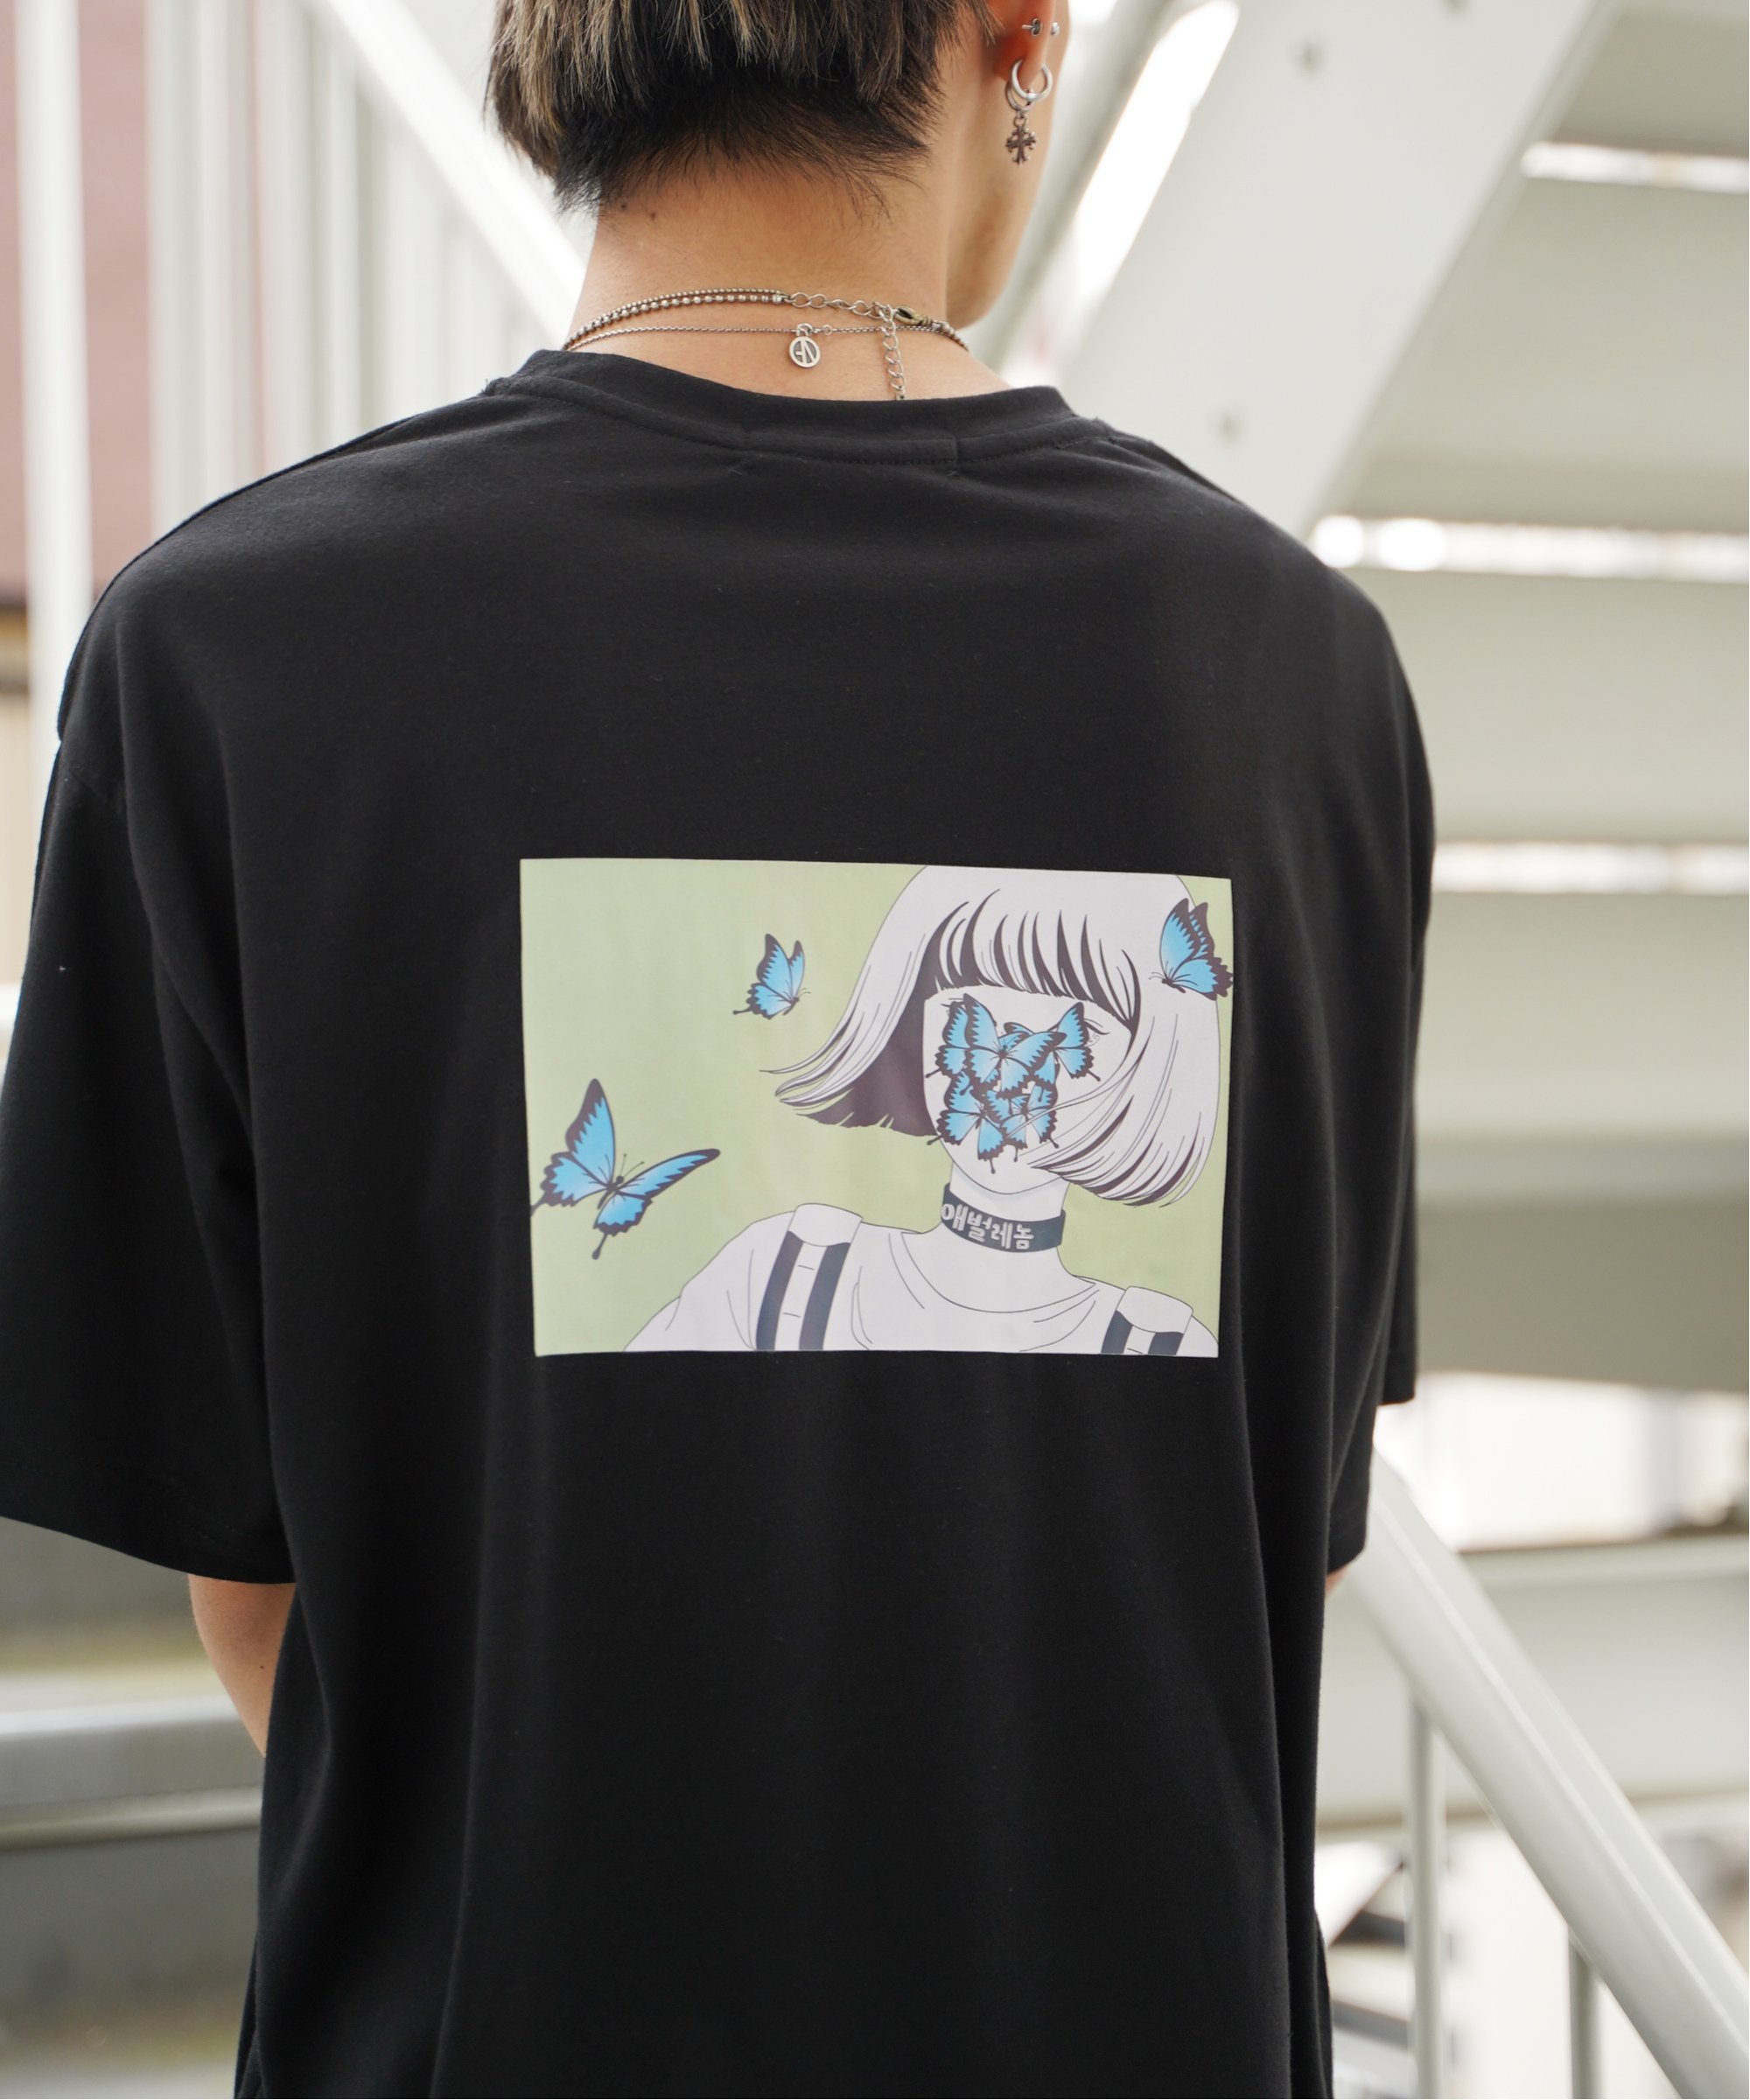 KisaバタフライイラストバックプリントTシャツ